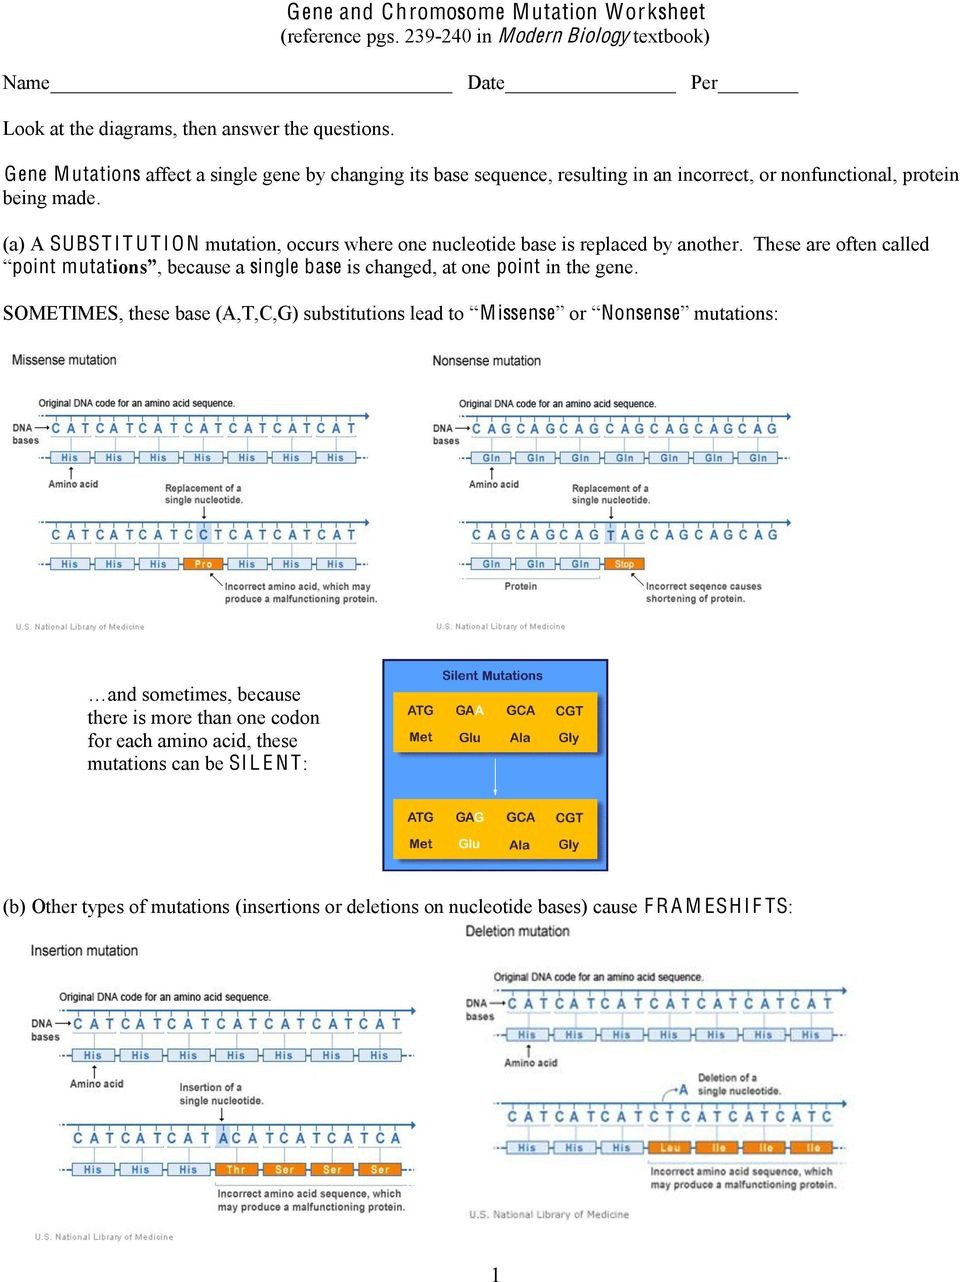 Gene and Chromosome Mutation Worksheet Gene and Chromosome Mutation Worksheet Reference Pgs In